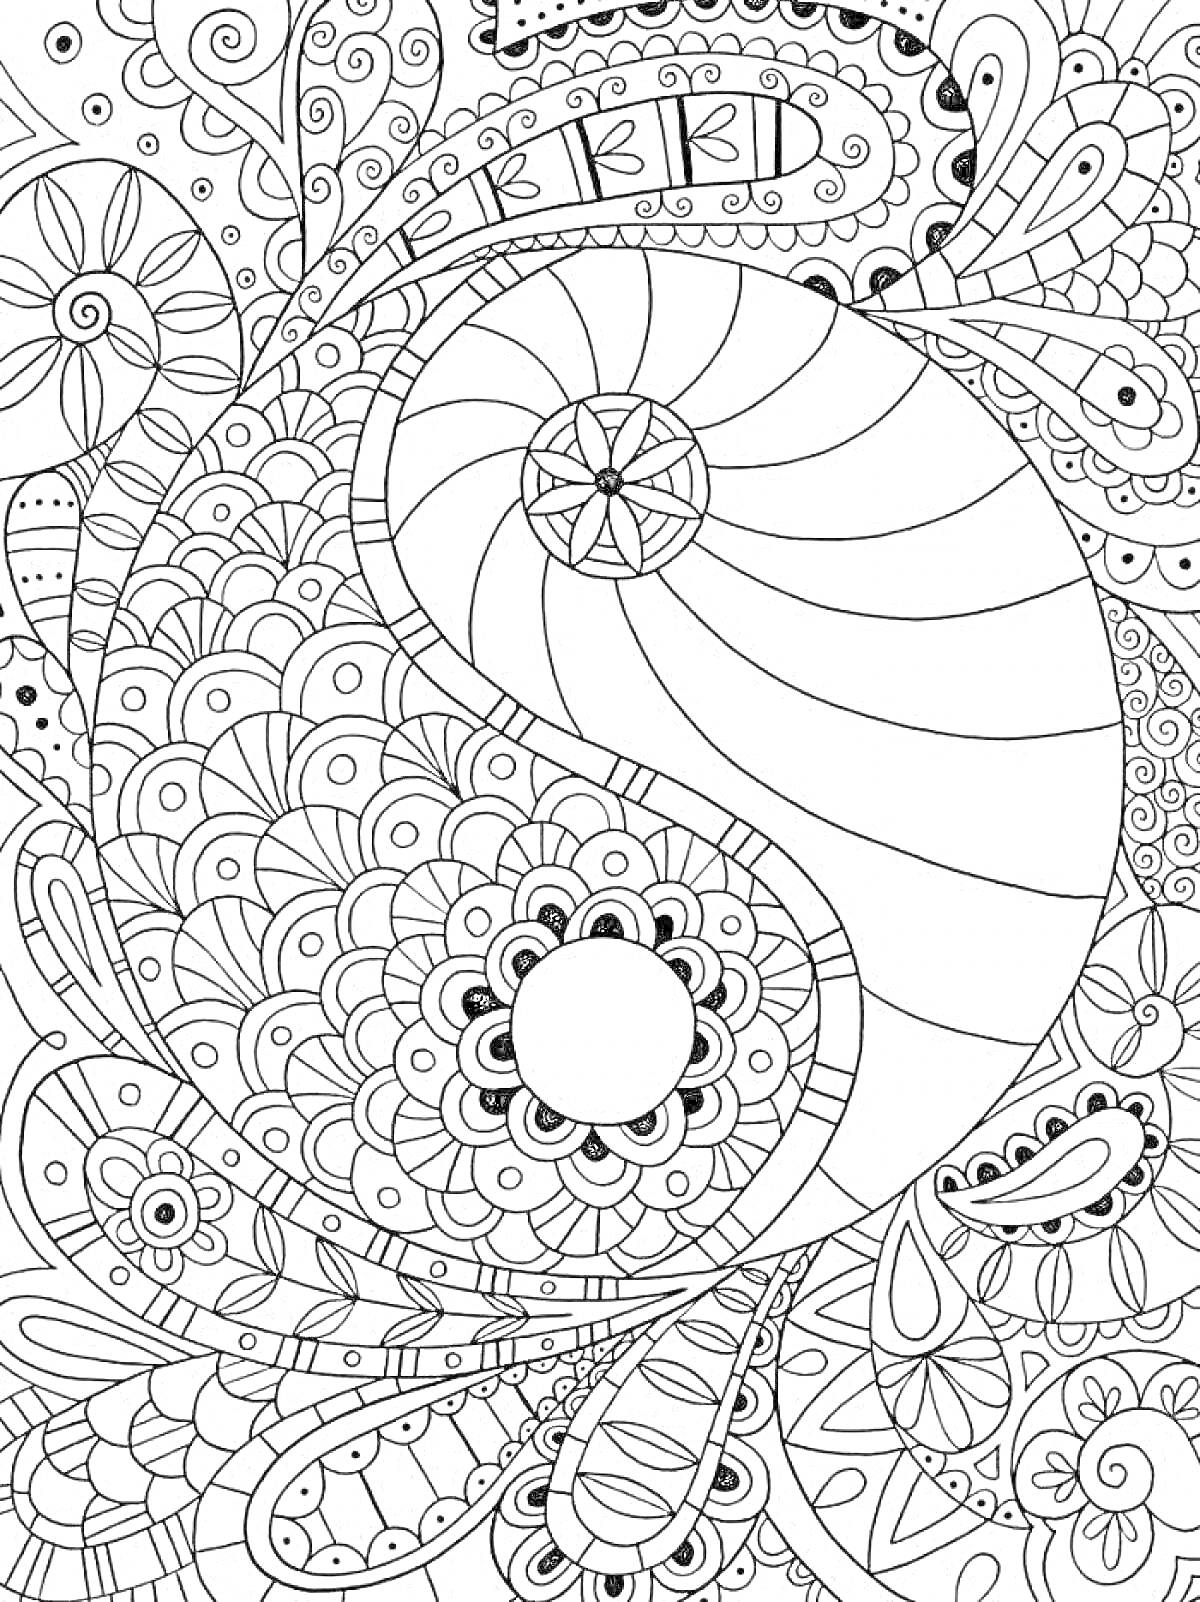 Раскраска Инь и Ян с узорами, цветами и геометрическими фигурами